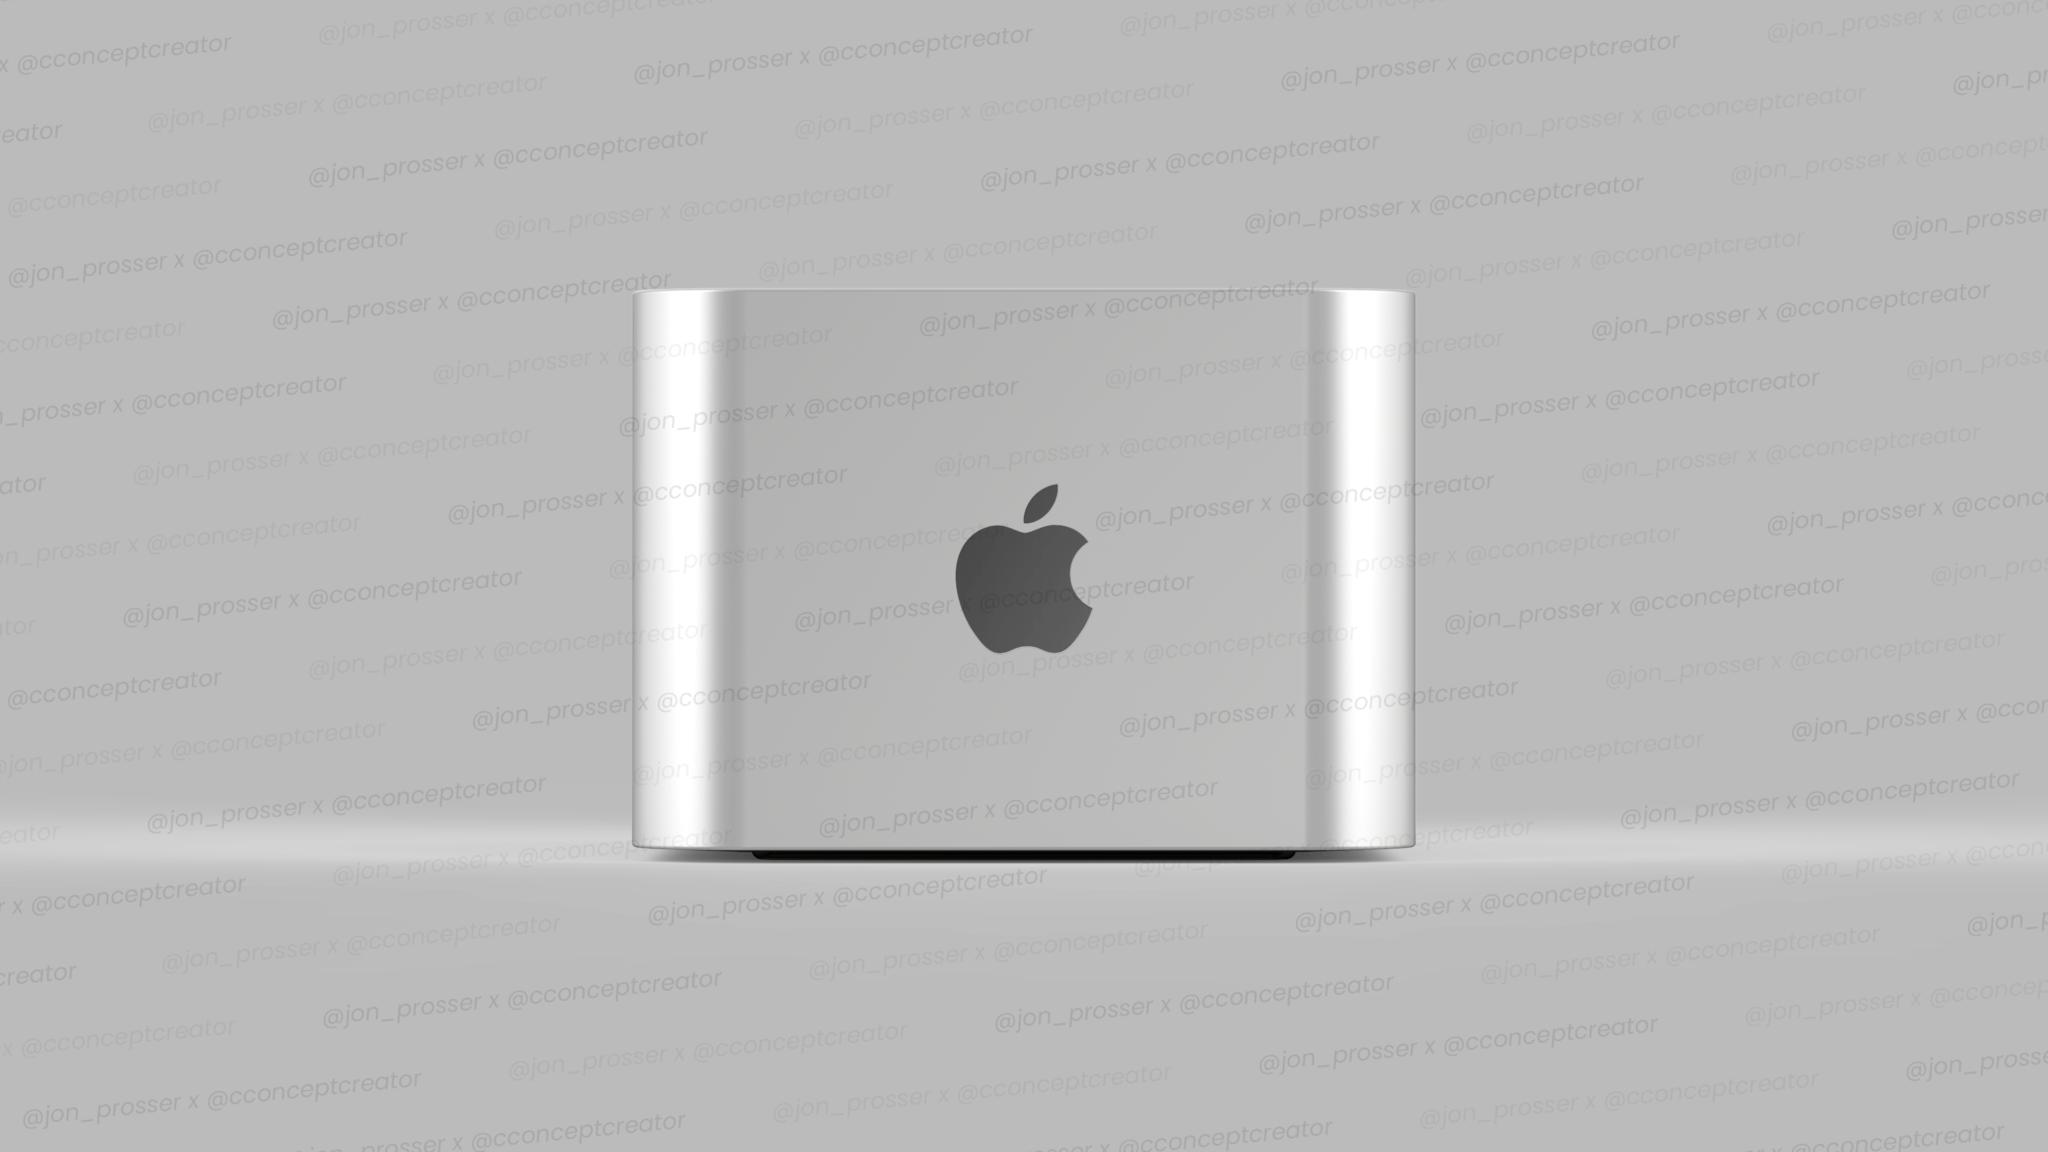 Mac Pro mini concept